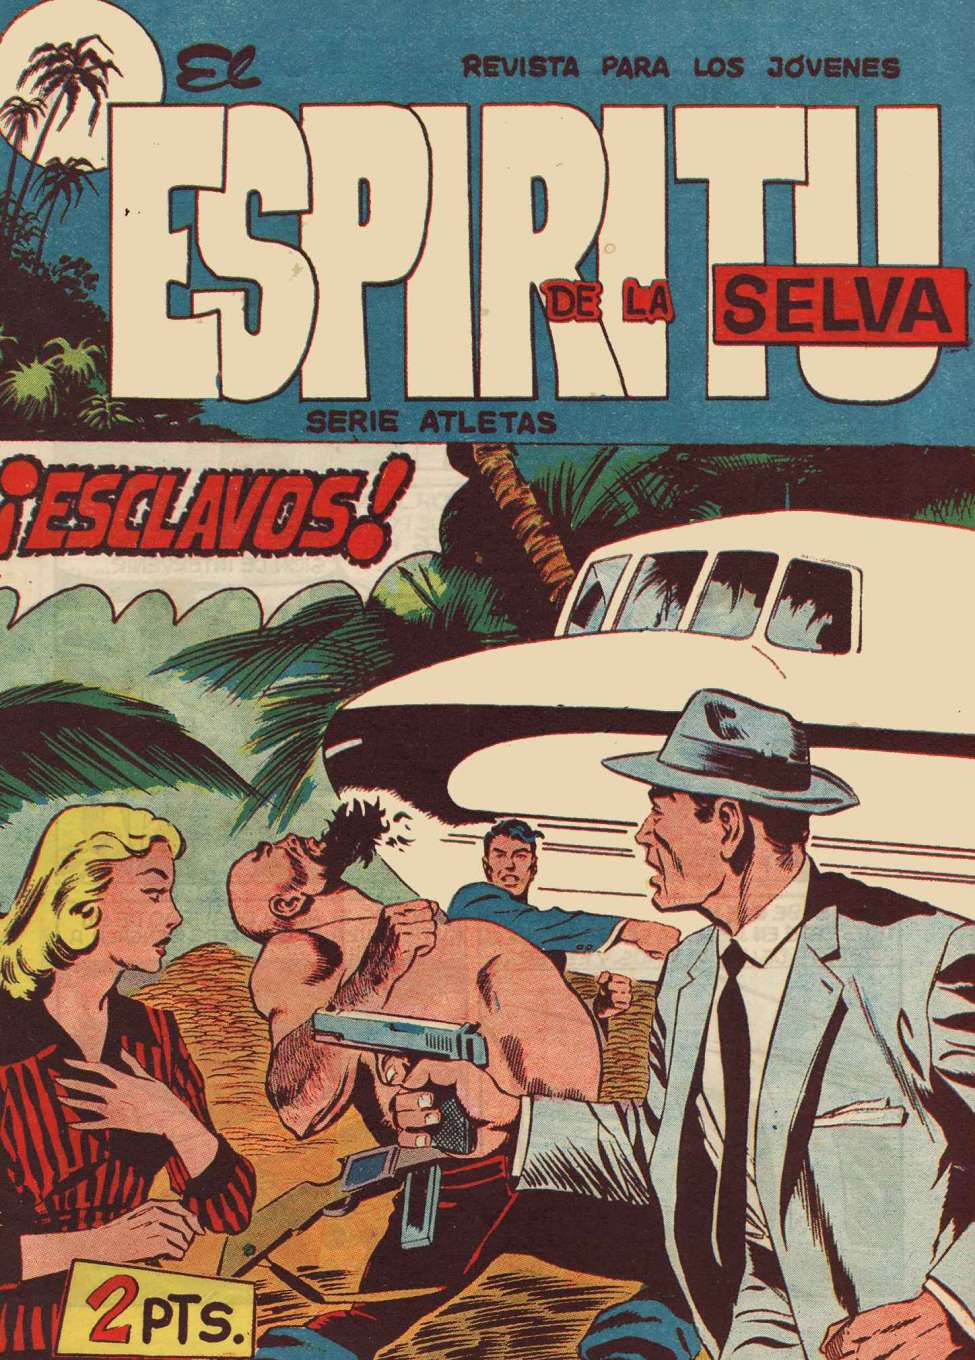 Book Cover For El Espiritu De La Selva 81 - Esclavos!